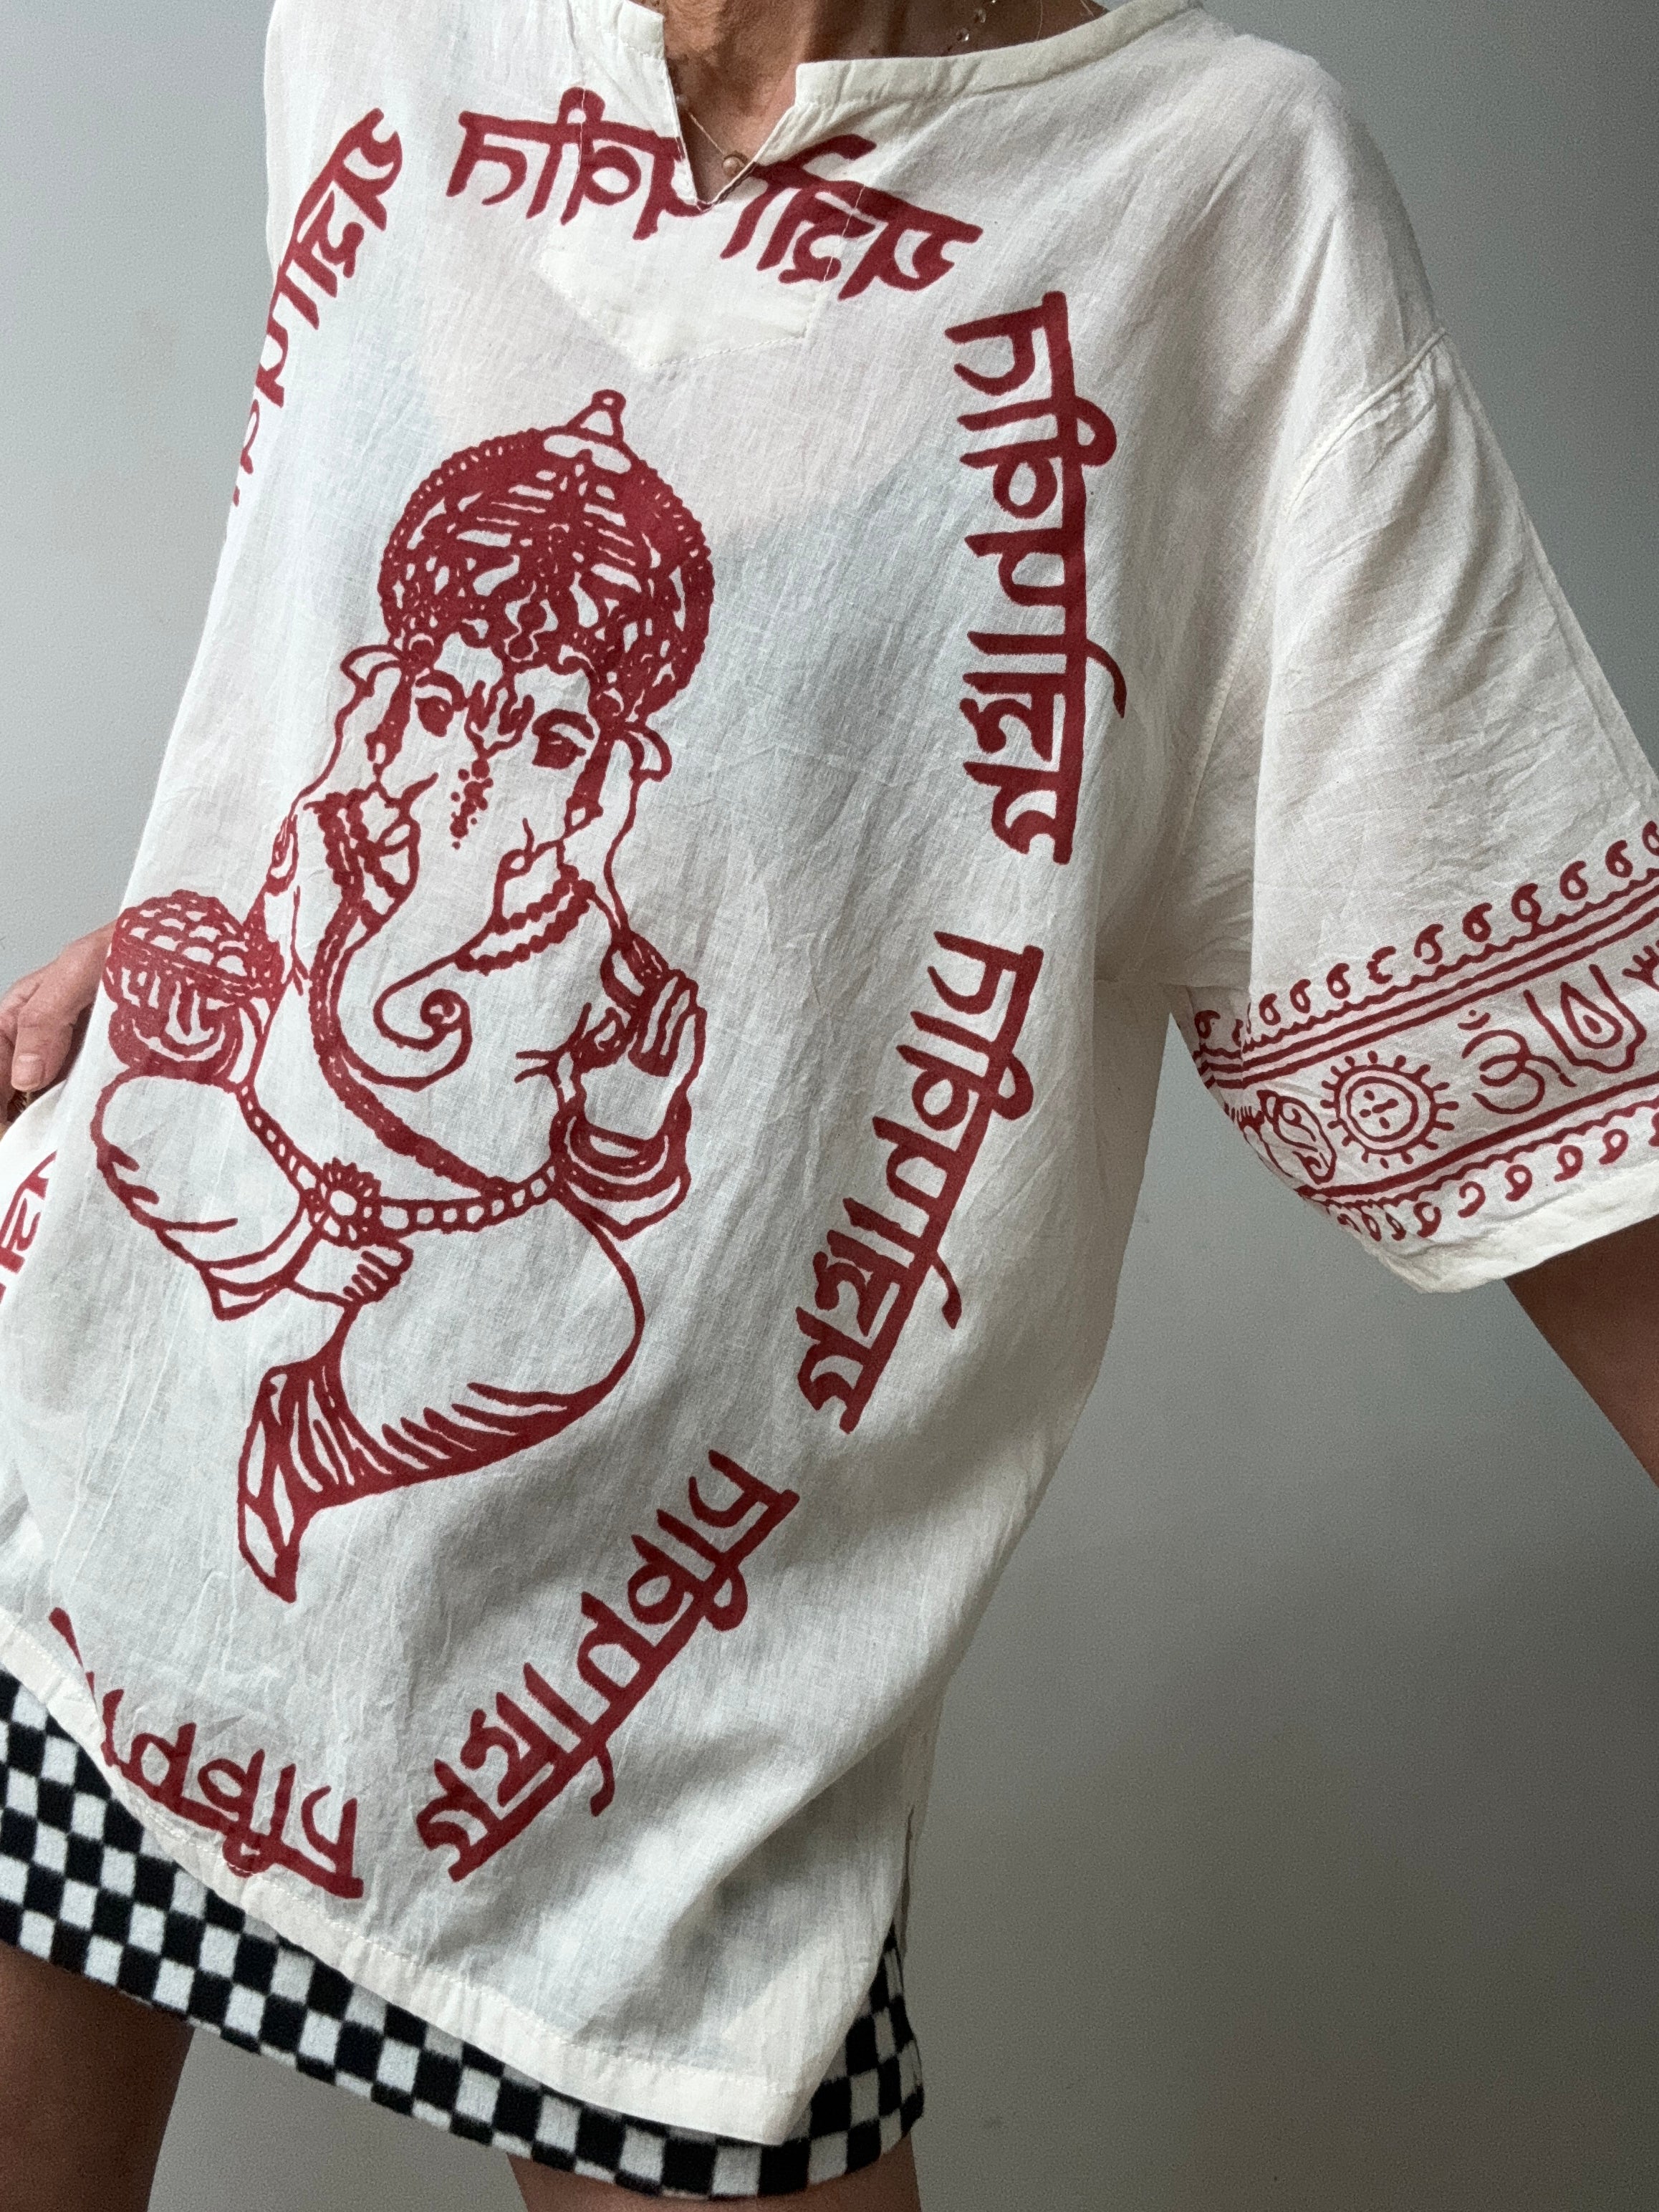 Future Nomads Tops Block Print Ganesh Short Sleeve Top - Natural